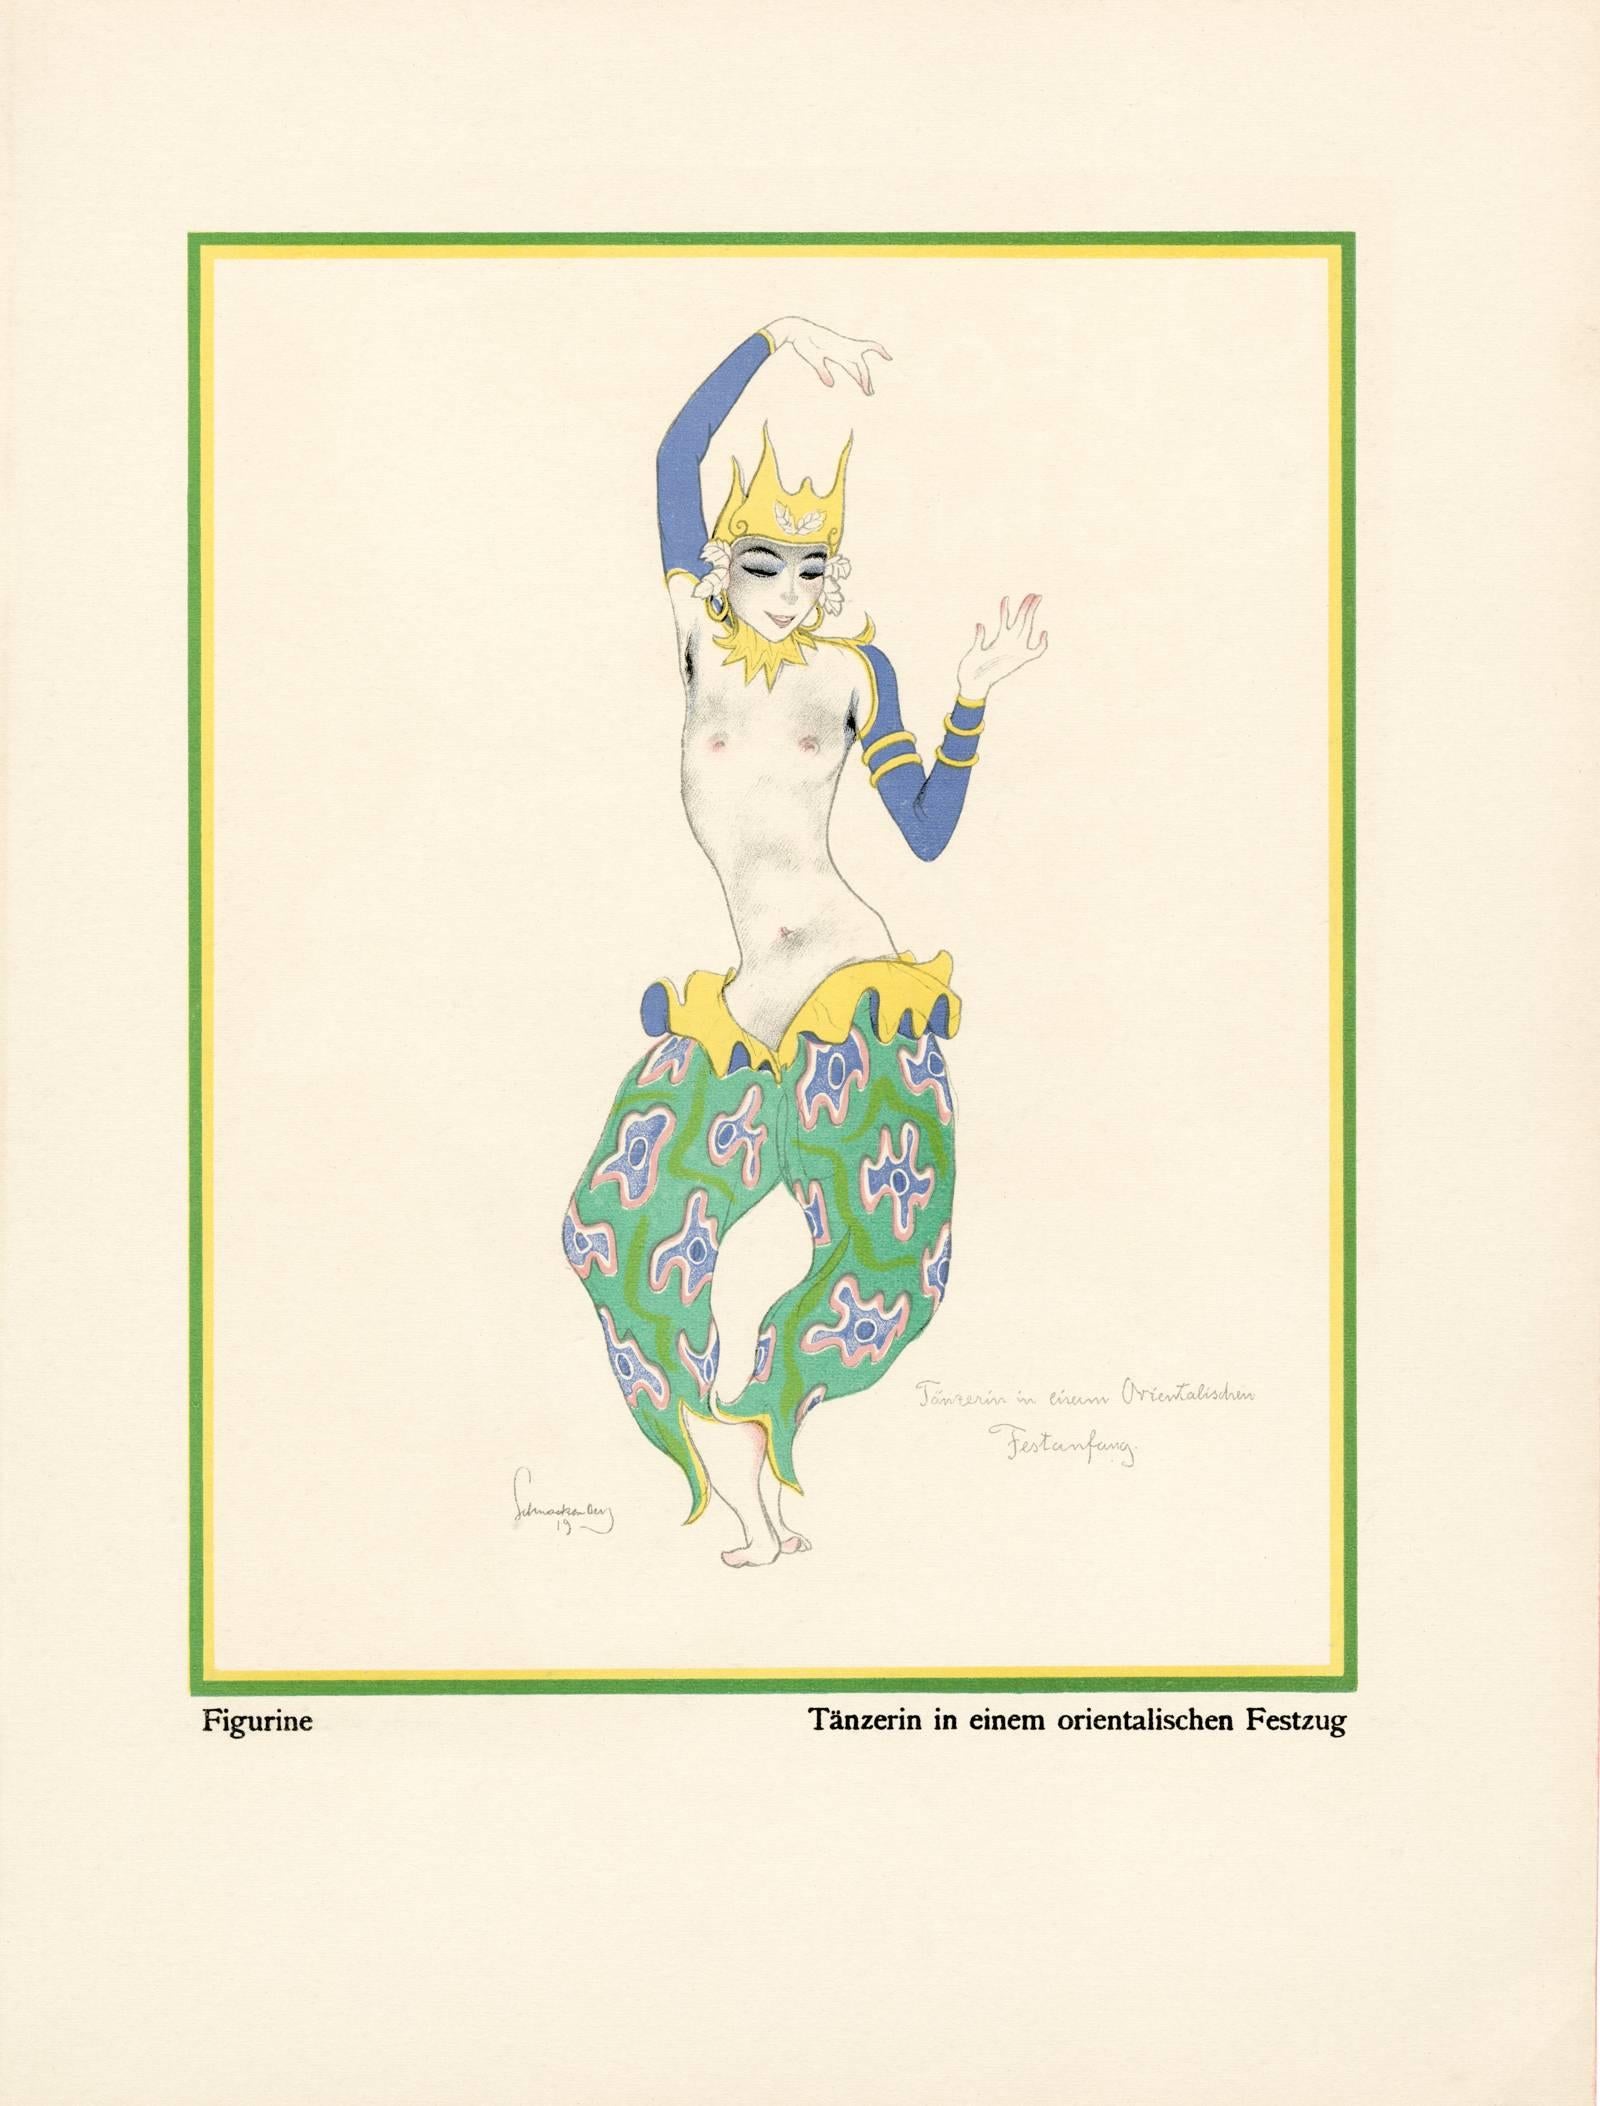 Kostume, Plakate, und Dekorationen, "Dancer in an Oriental Pageant"